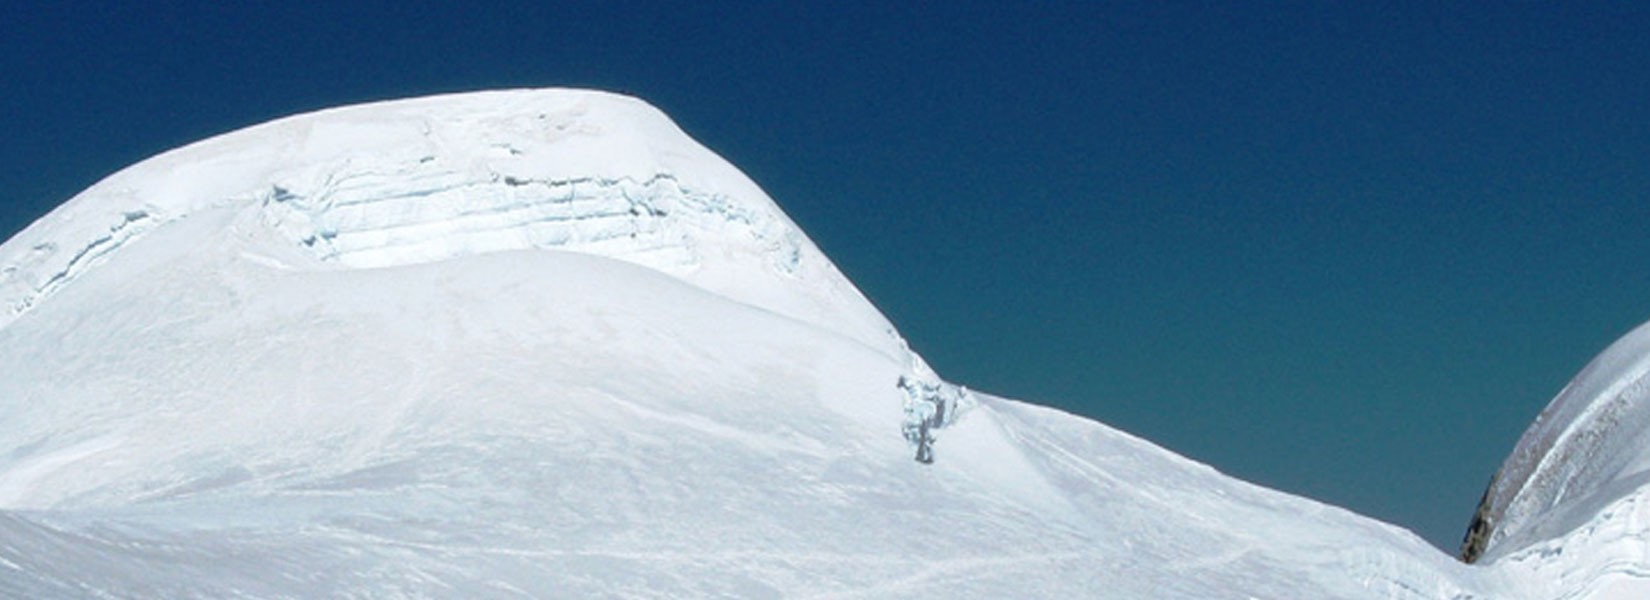 Mera Peak Climbing in Nepal 2024